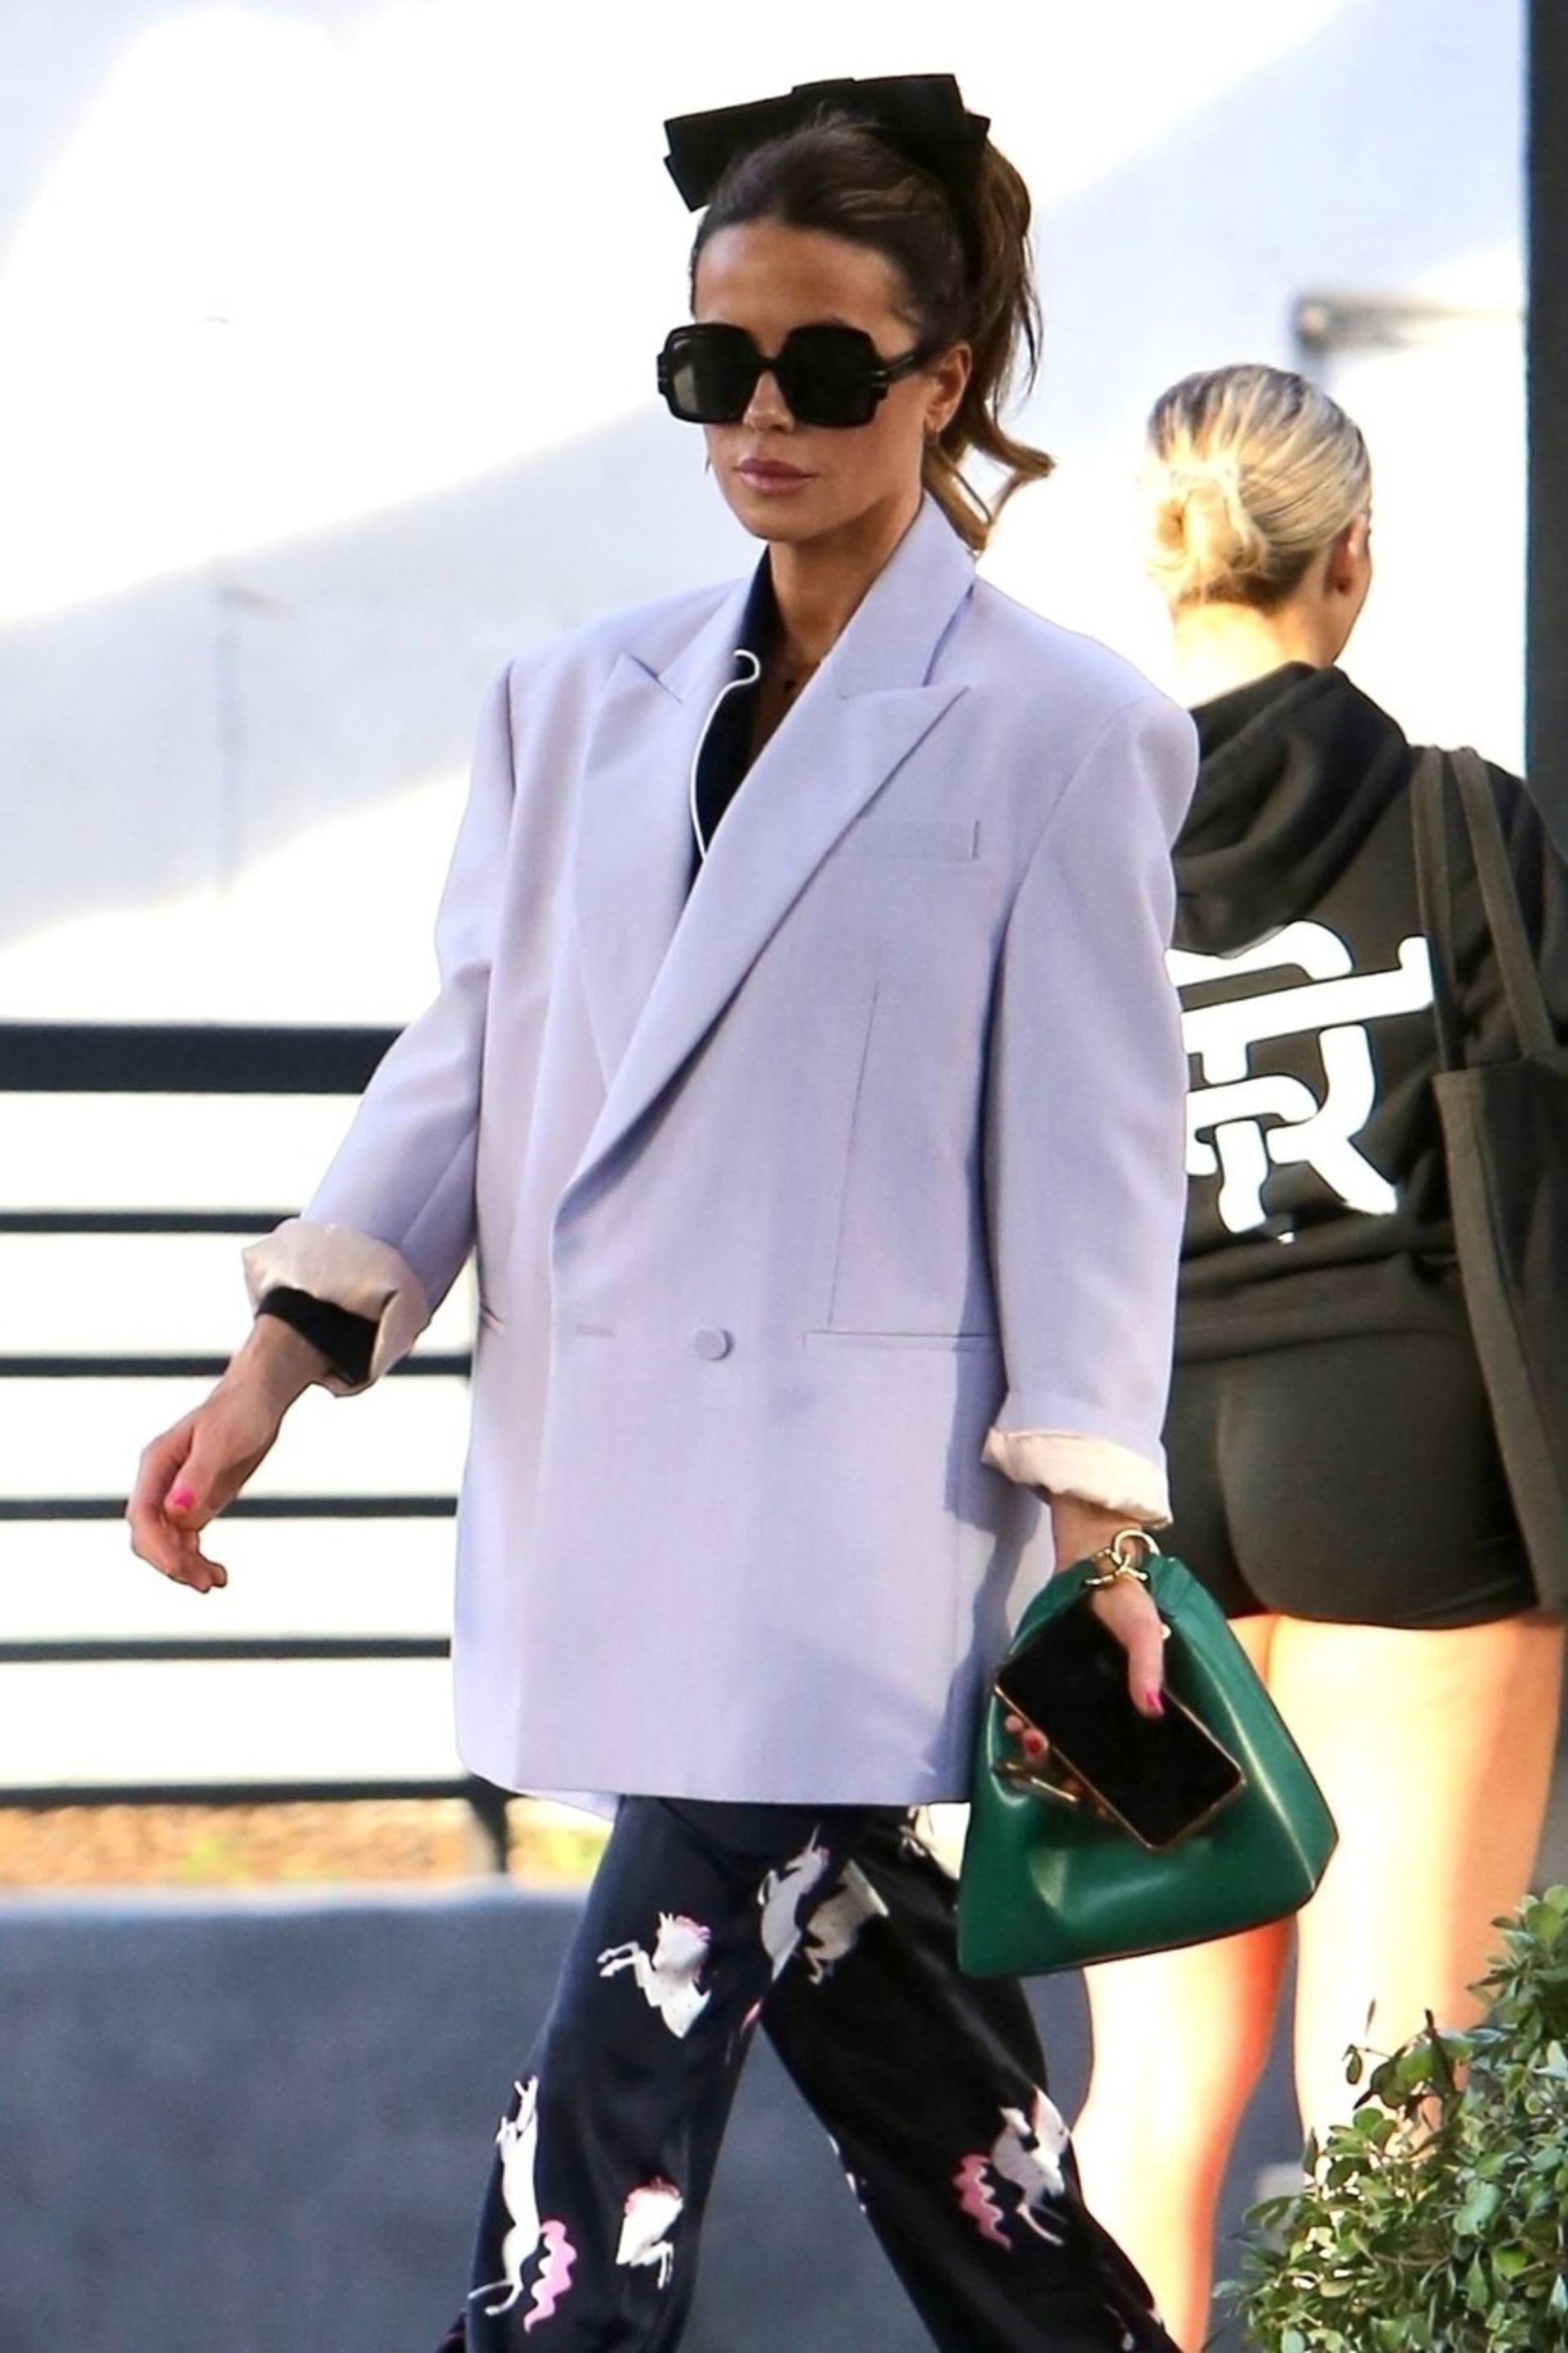 Sluneční brýle se v poslední době staly spíše módním doplňkem. Takhle sluší herečce Kate Beckinsale.